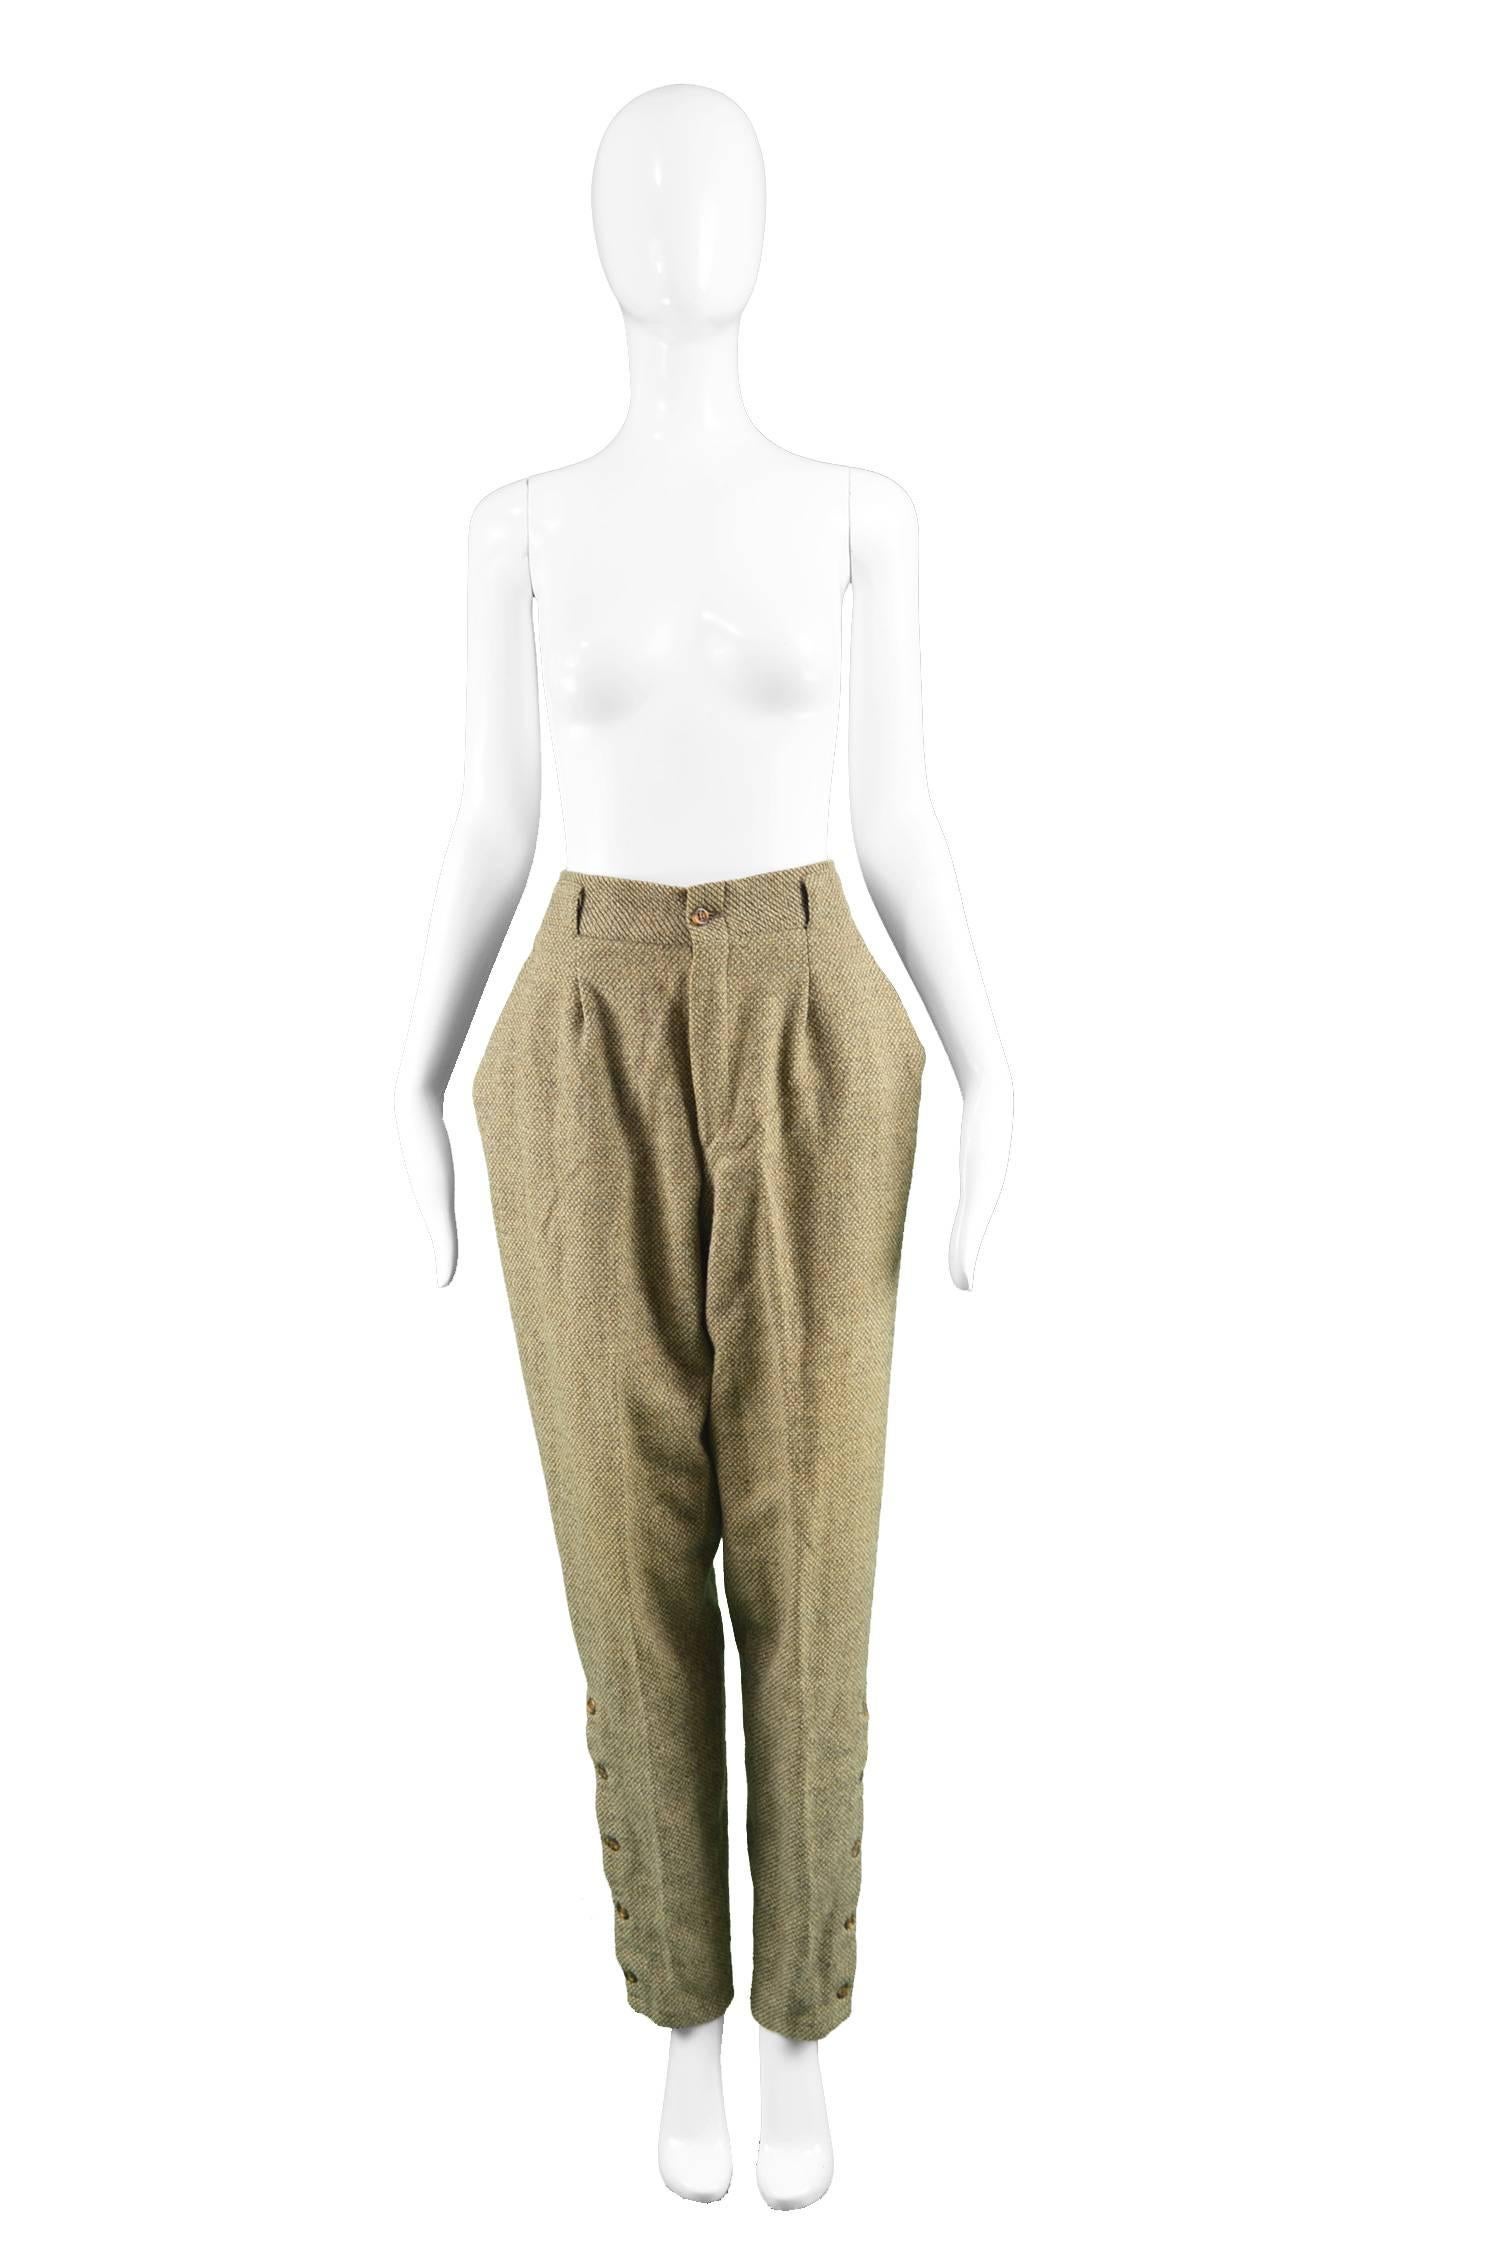 Gianni Versace Vintage Light Brown Tweed Tapered Leg Jodhpur Pants, 1980s

Estimated Size: UK 10/ US 6/ EU 38. Please check measurements
Waist - 28” / 71cm
Hips - 44” / 112cm
Rise - 13” / 33cm
Inside Leg - 32” / 81cm

Condition: Excellent Vintage